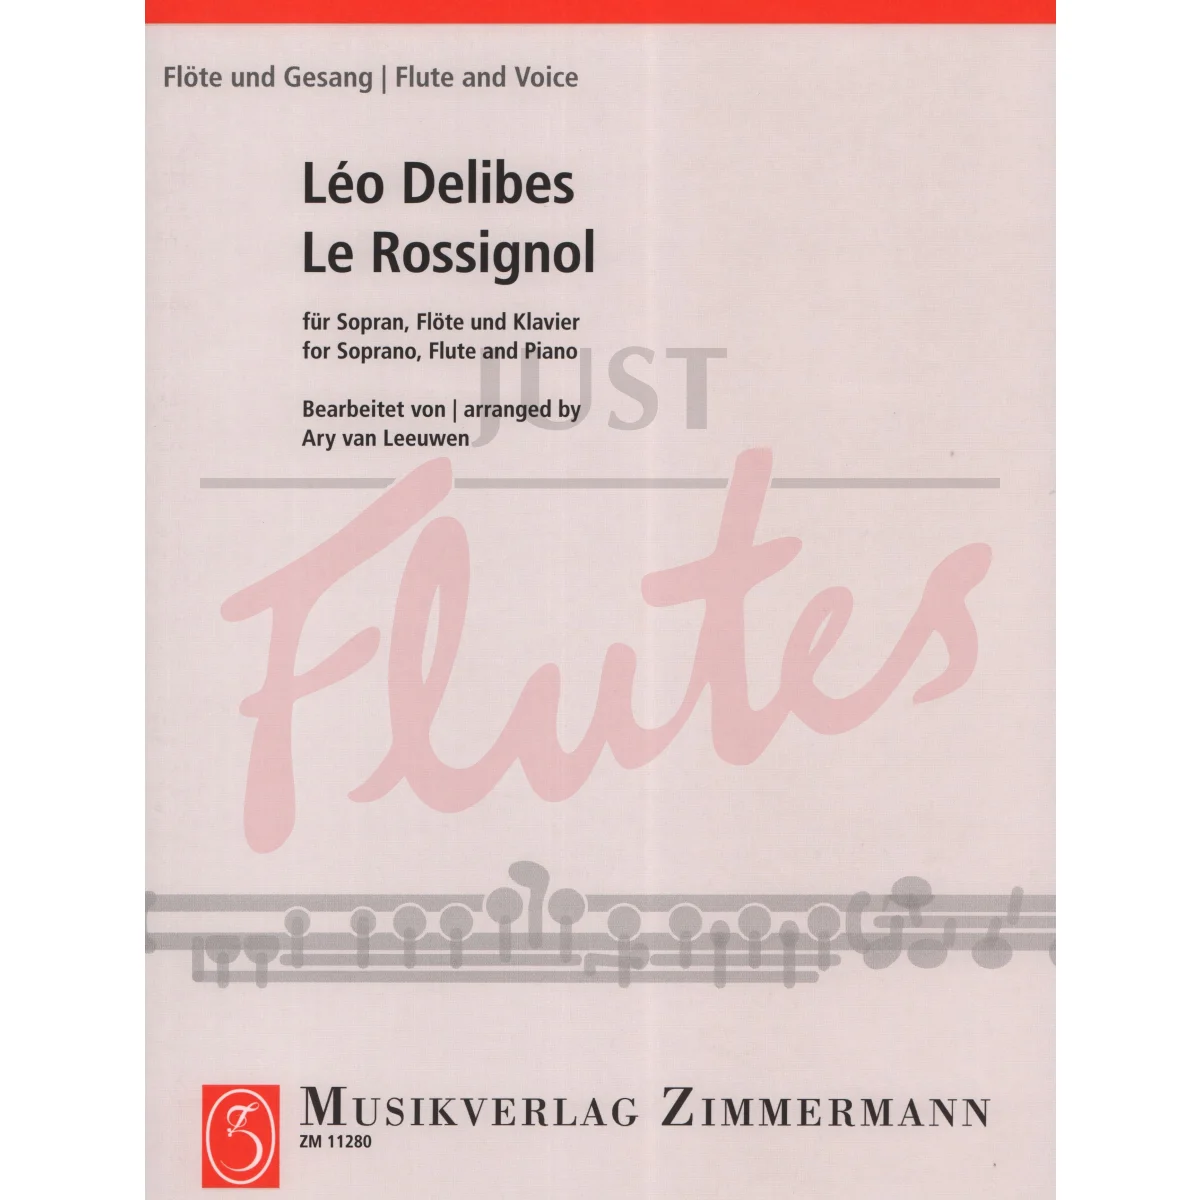 Le Rossignol for Soprano, Flute and Piano